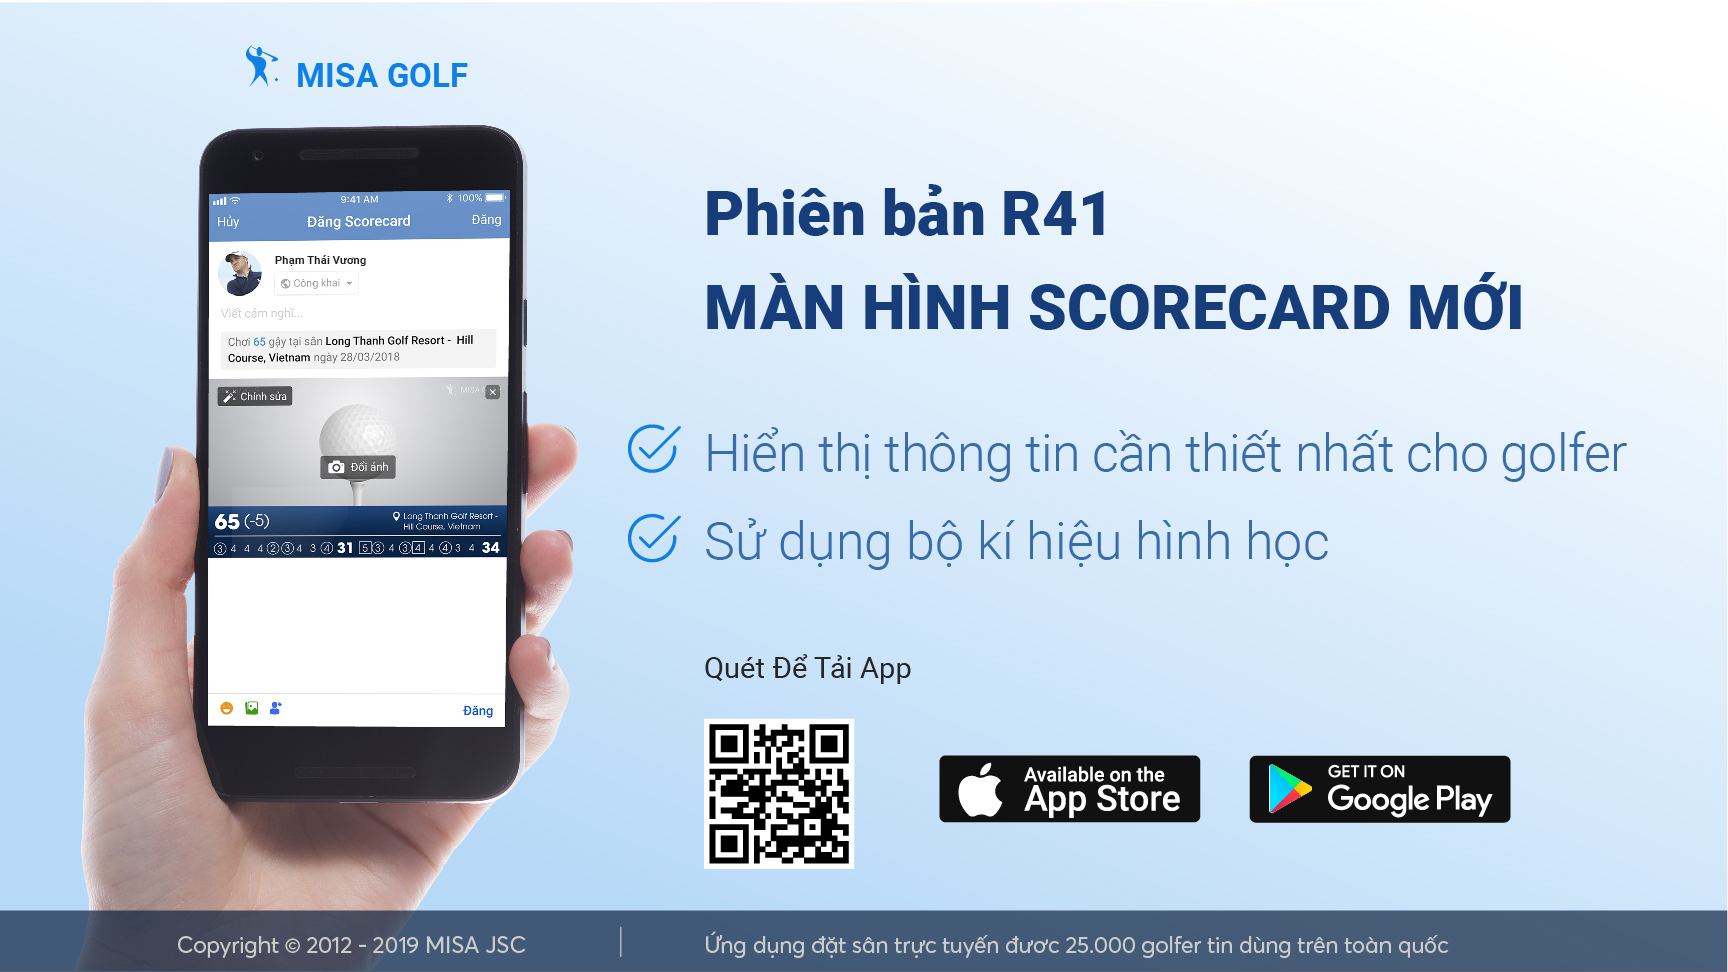 Cải tiến màn hình scorecard trên ứng dụng MISA Golf